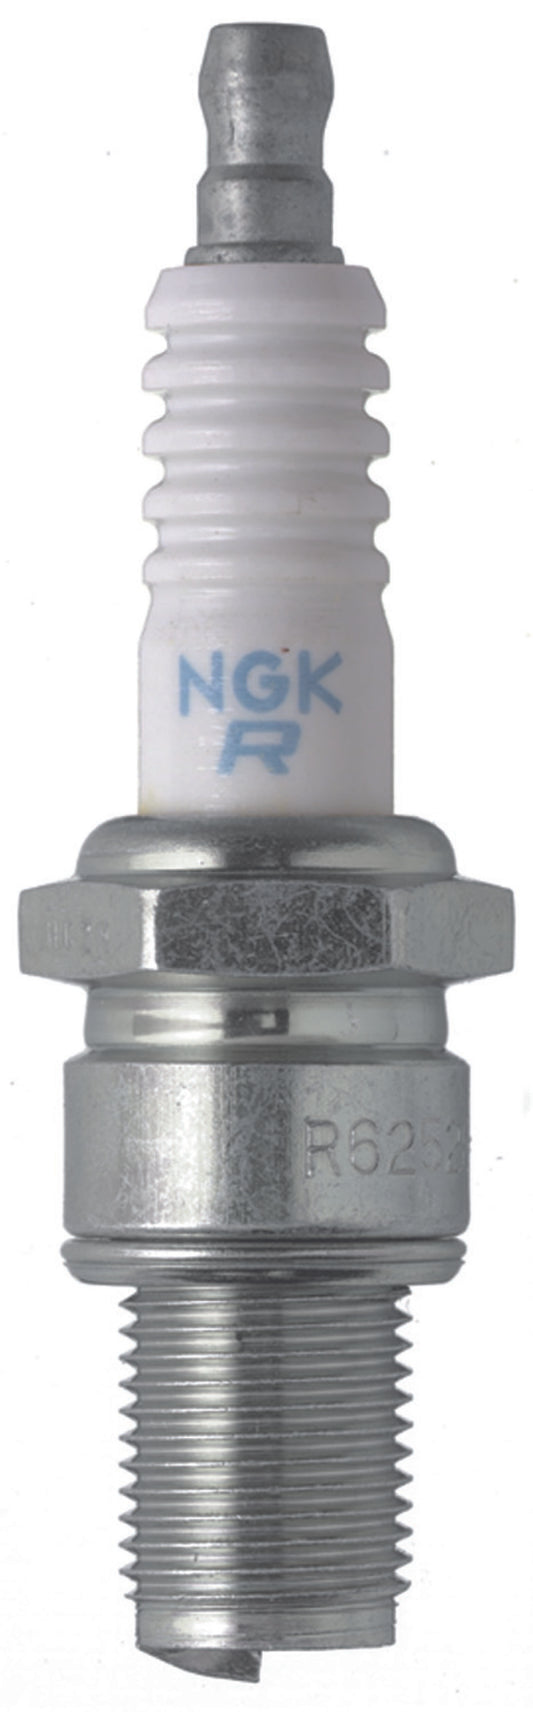 NGK Racing Spark Plug Box of 4 (R6252K-105)